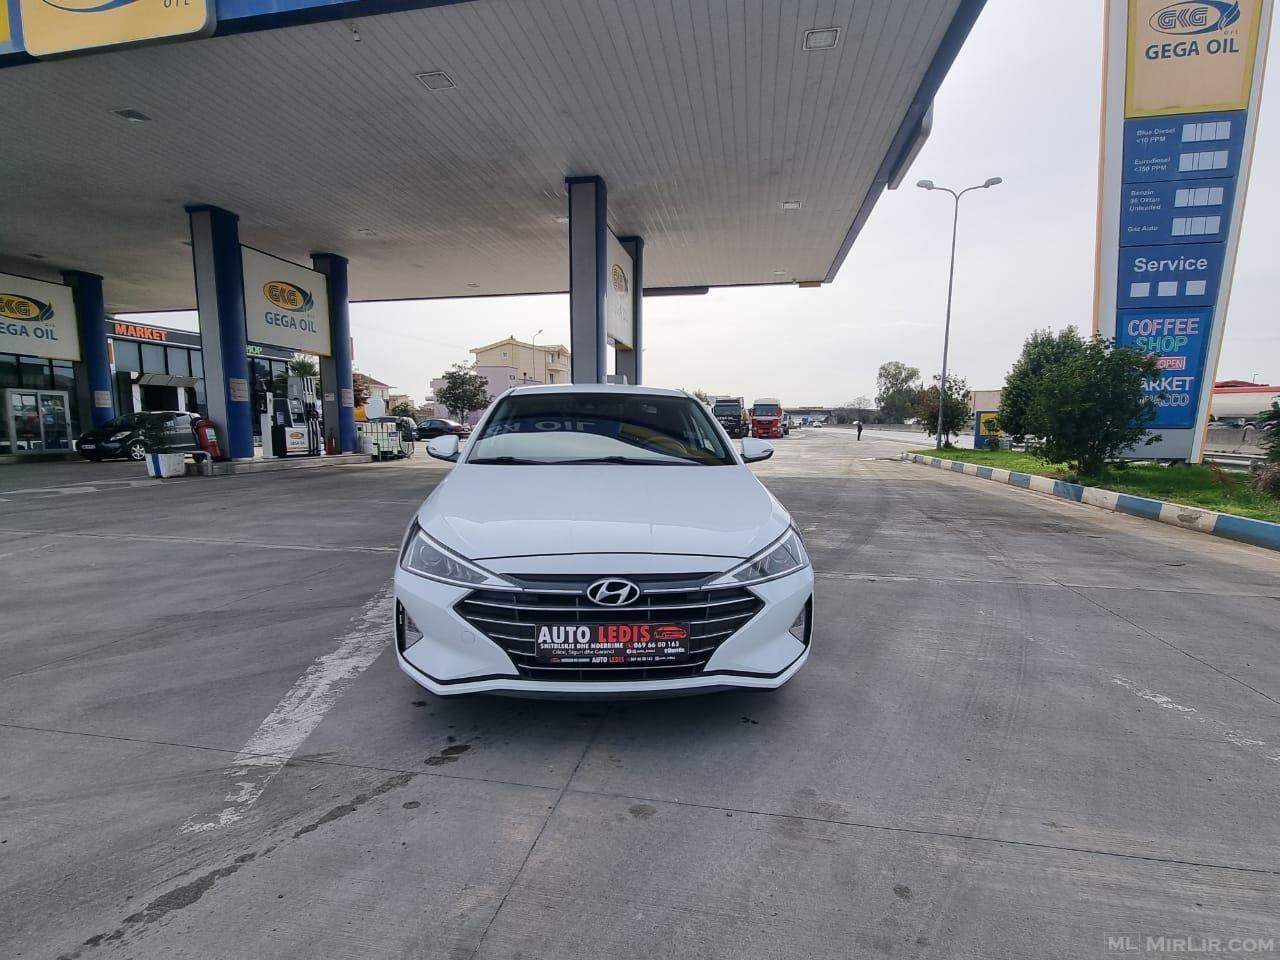 Hyundai 2019 Gaz 1.6 Automat 13500 euro okazion 